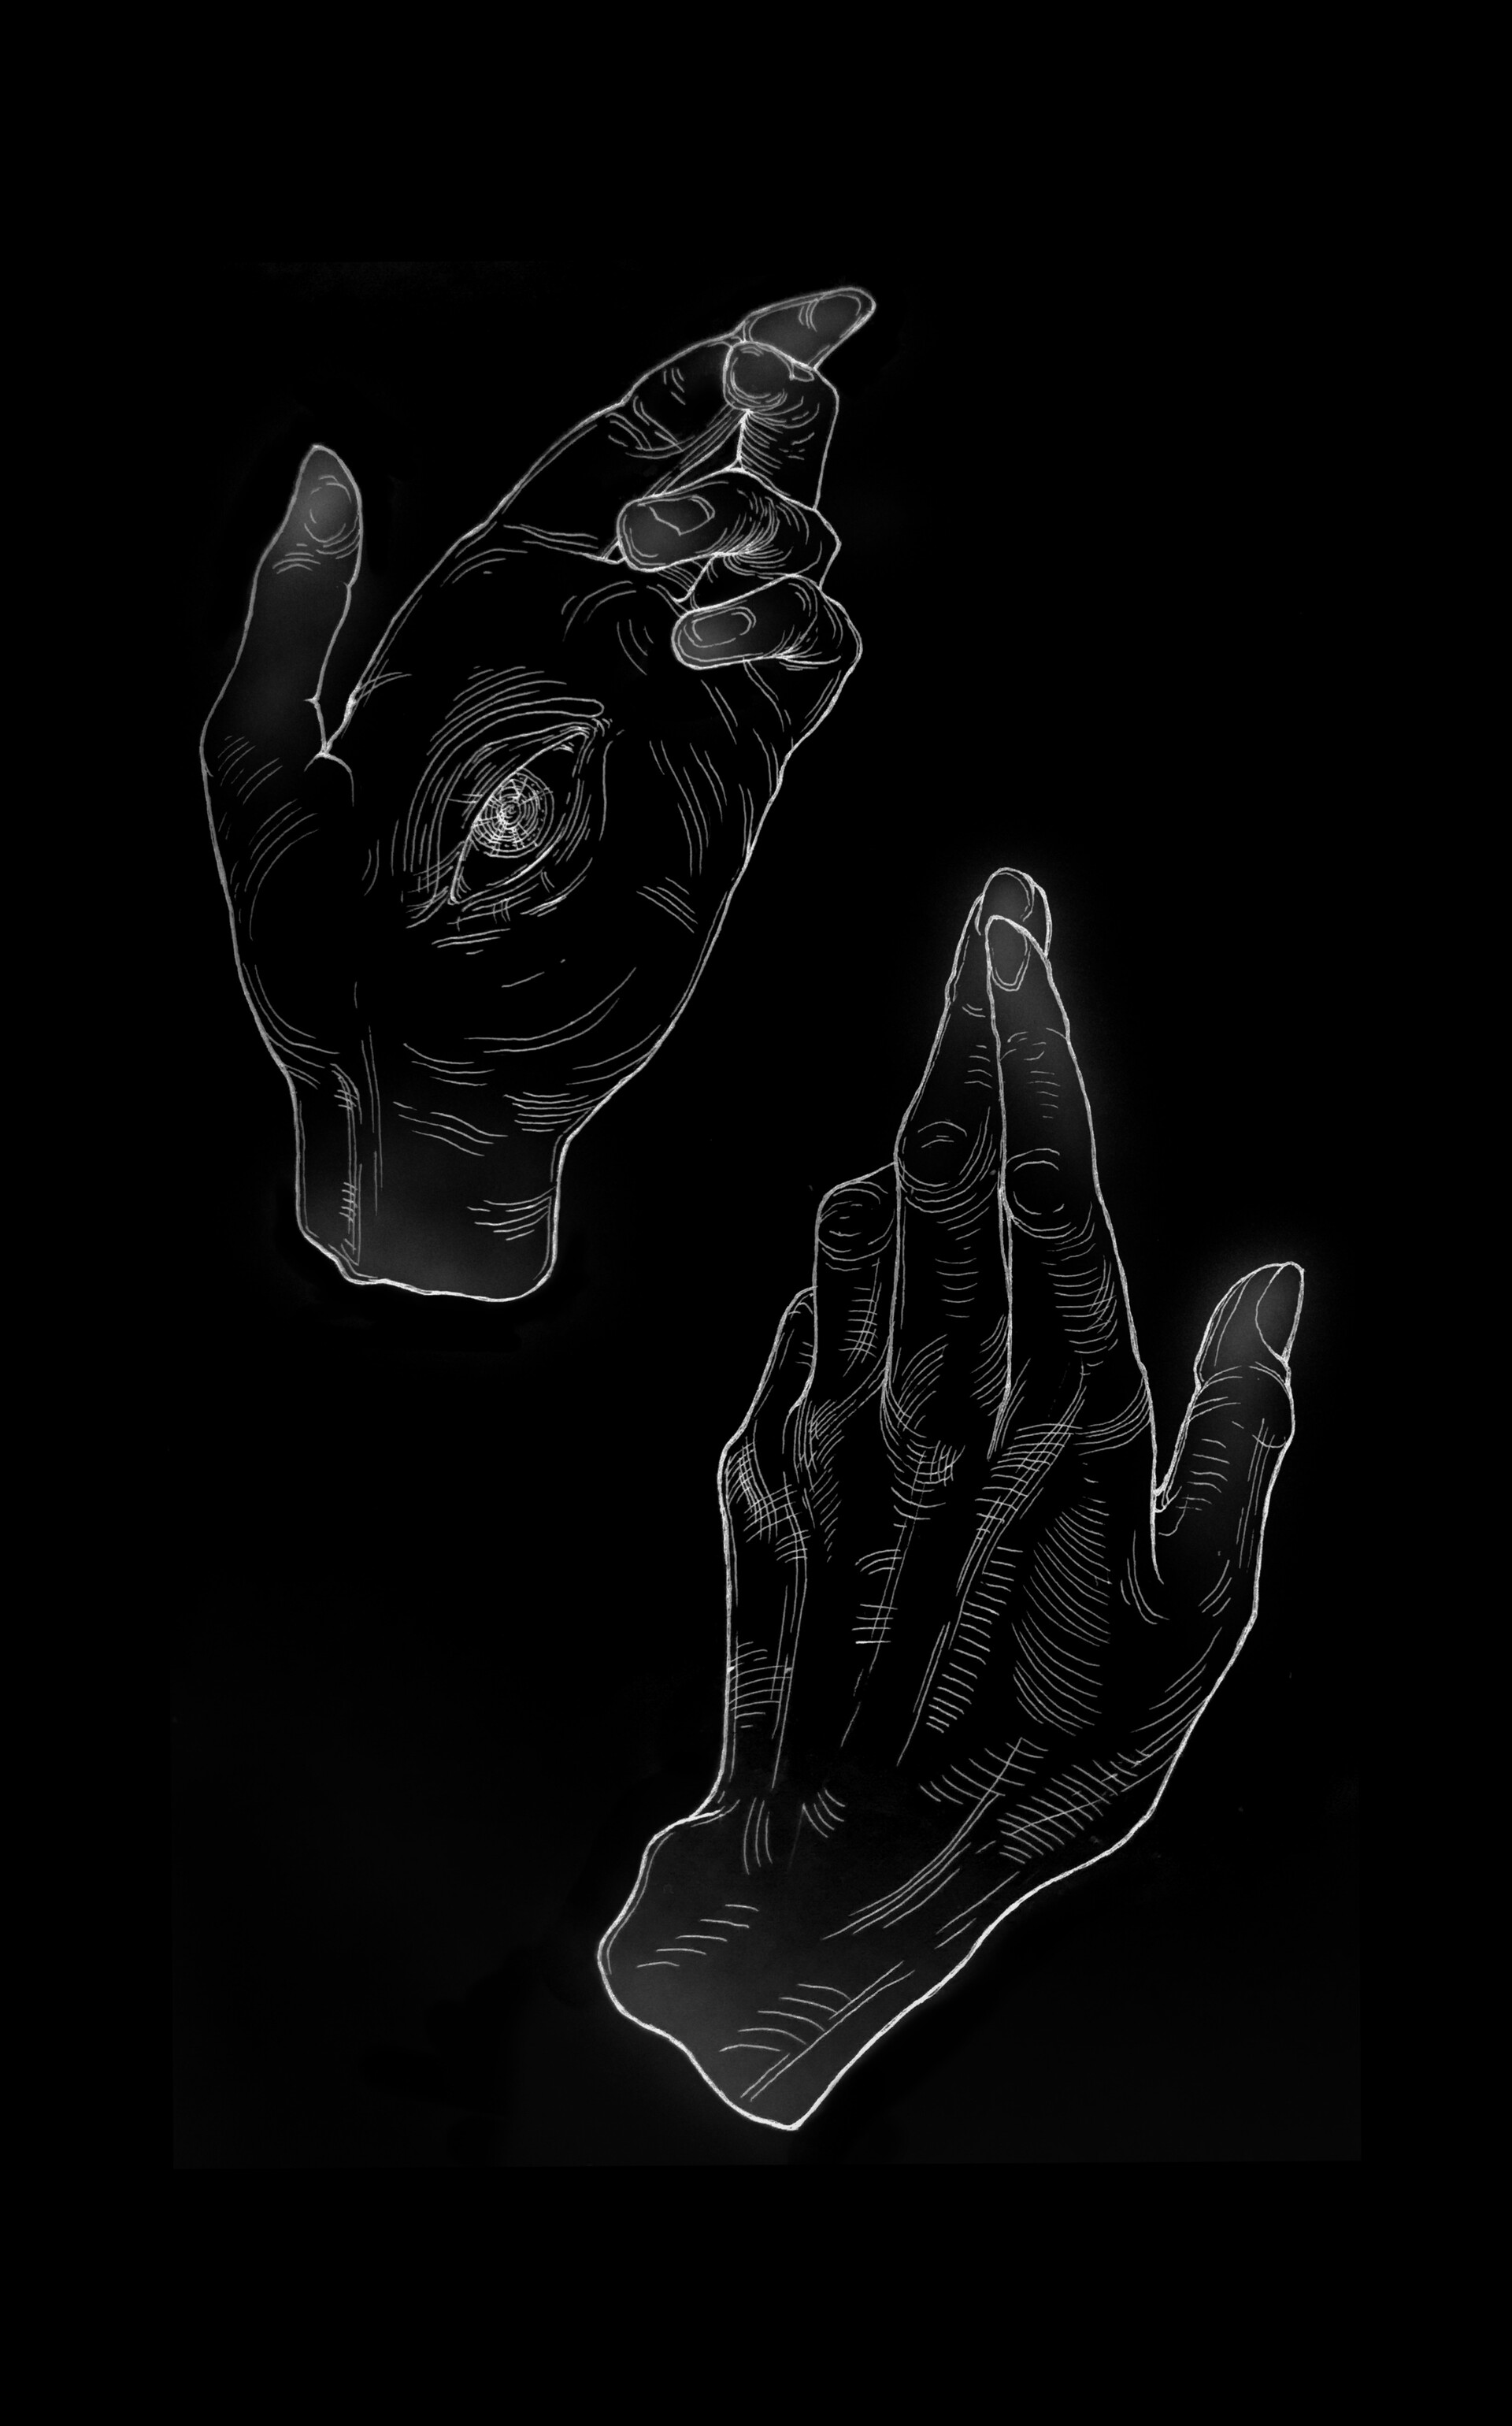 ArtStation - Eyed hands